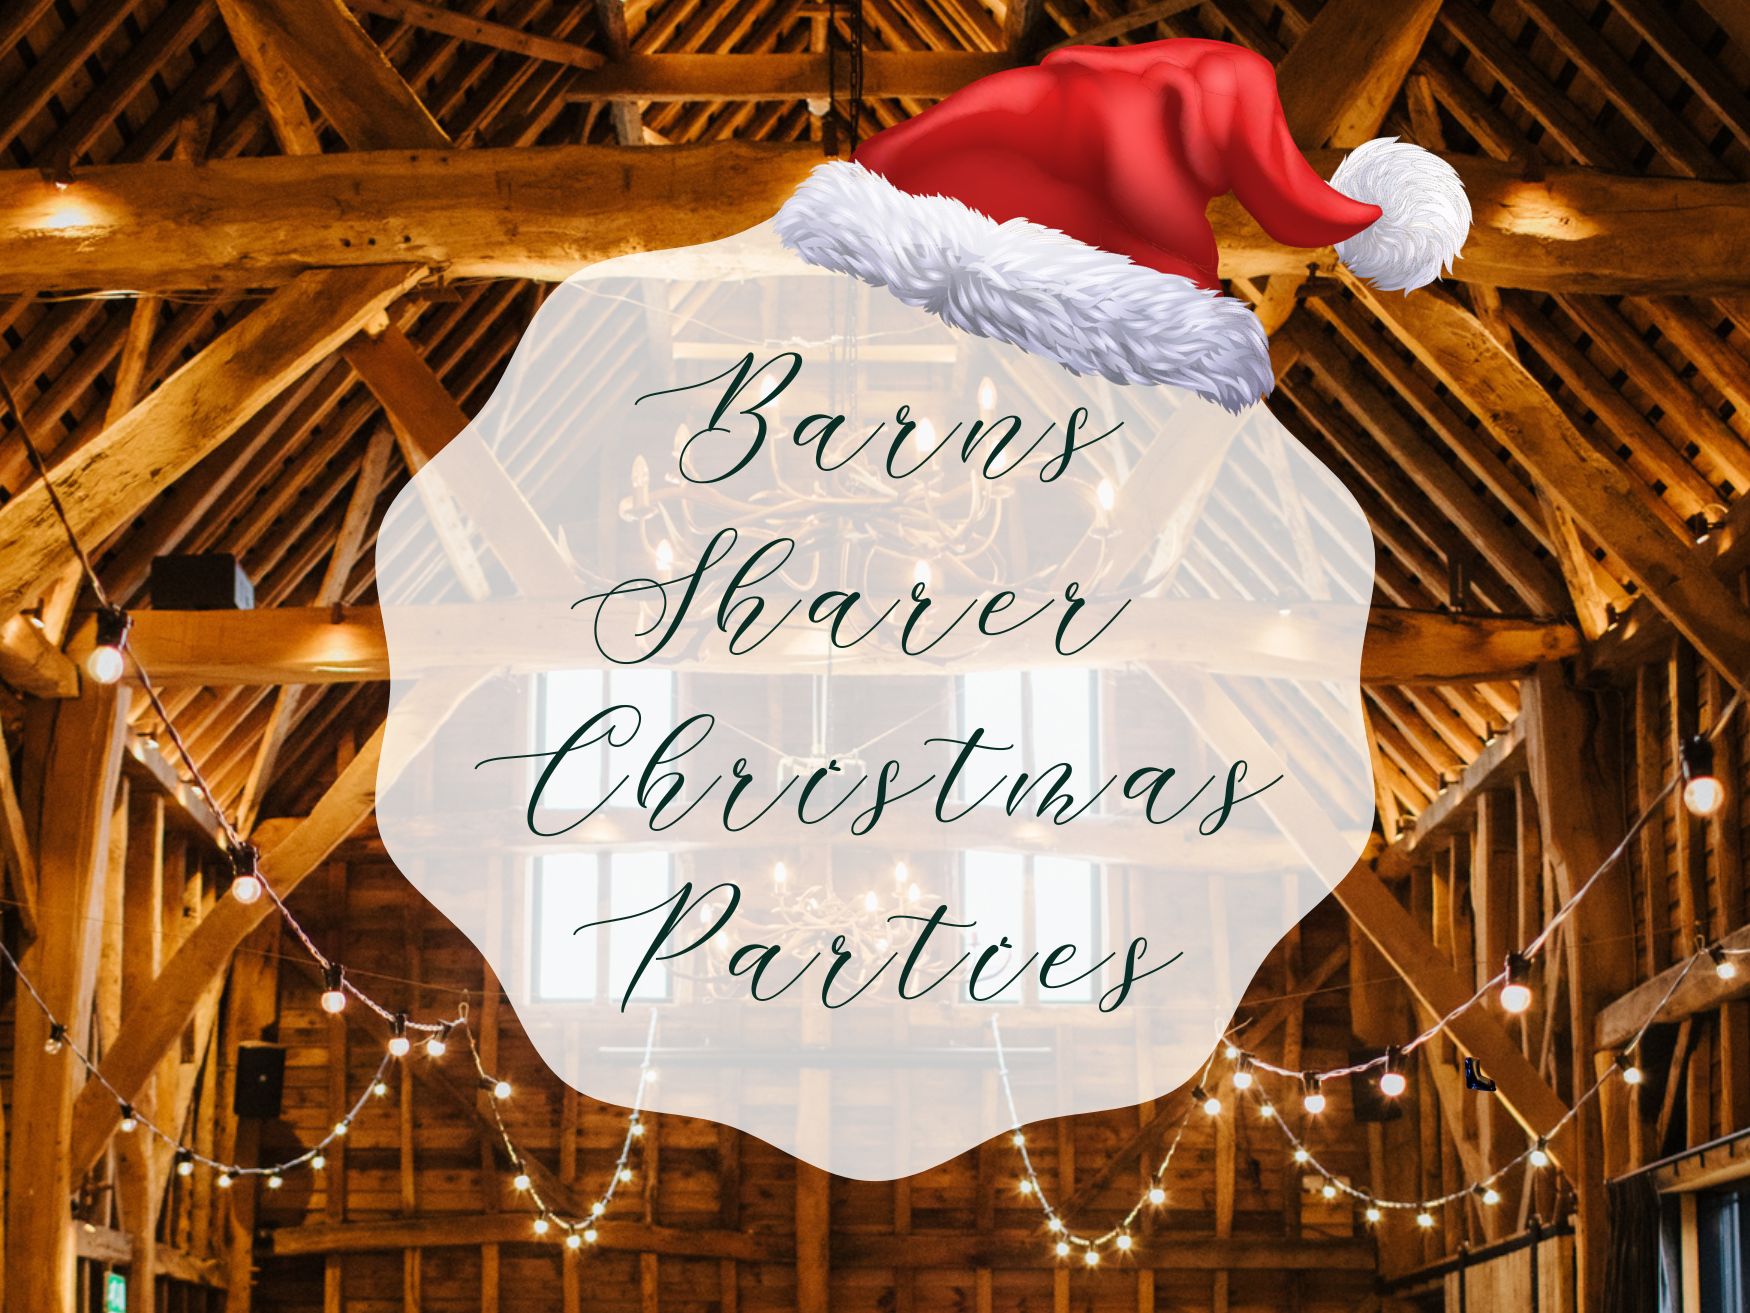 Barns Sharer Christmas Parties